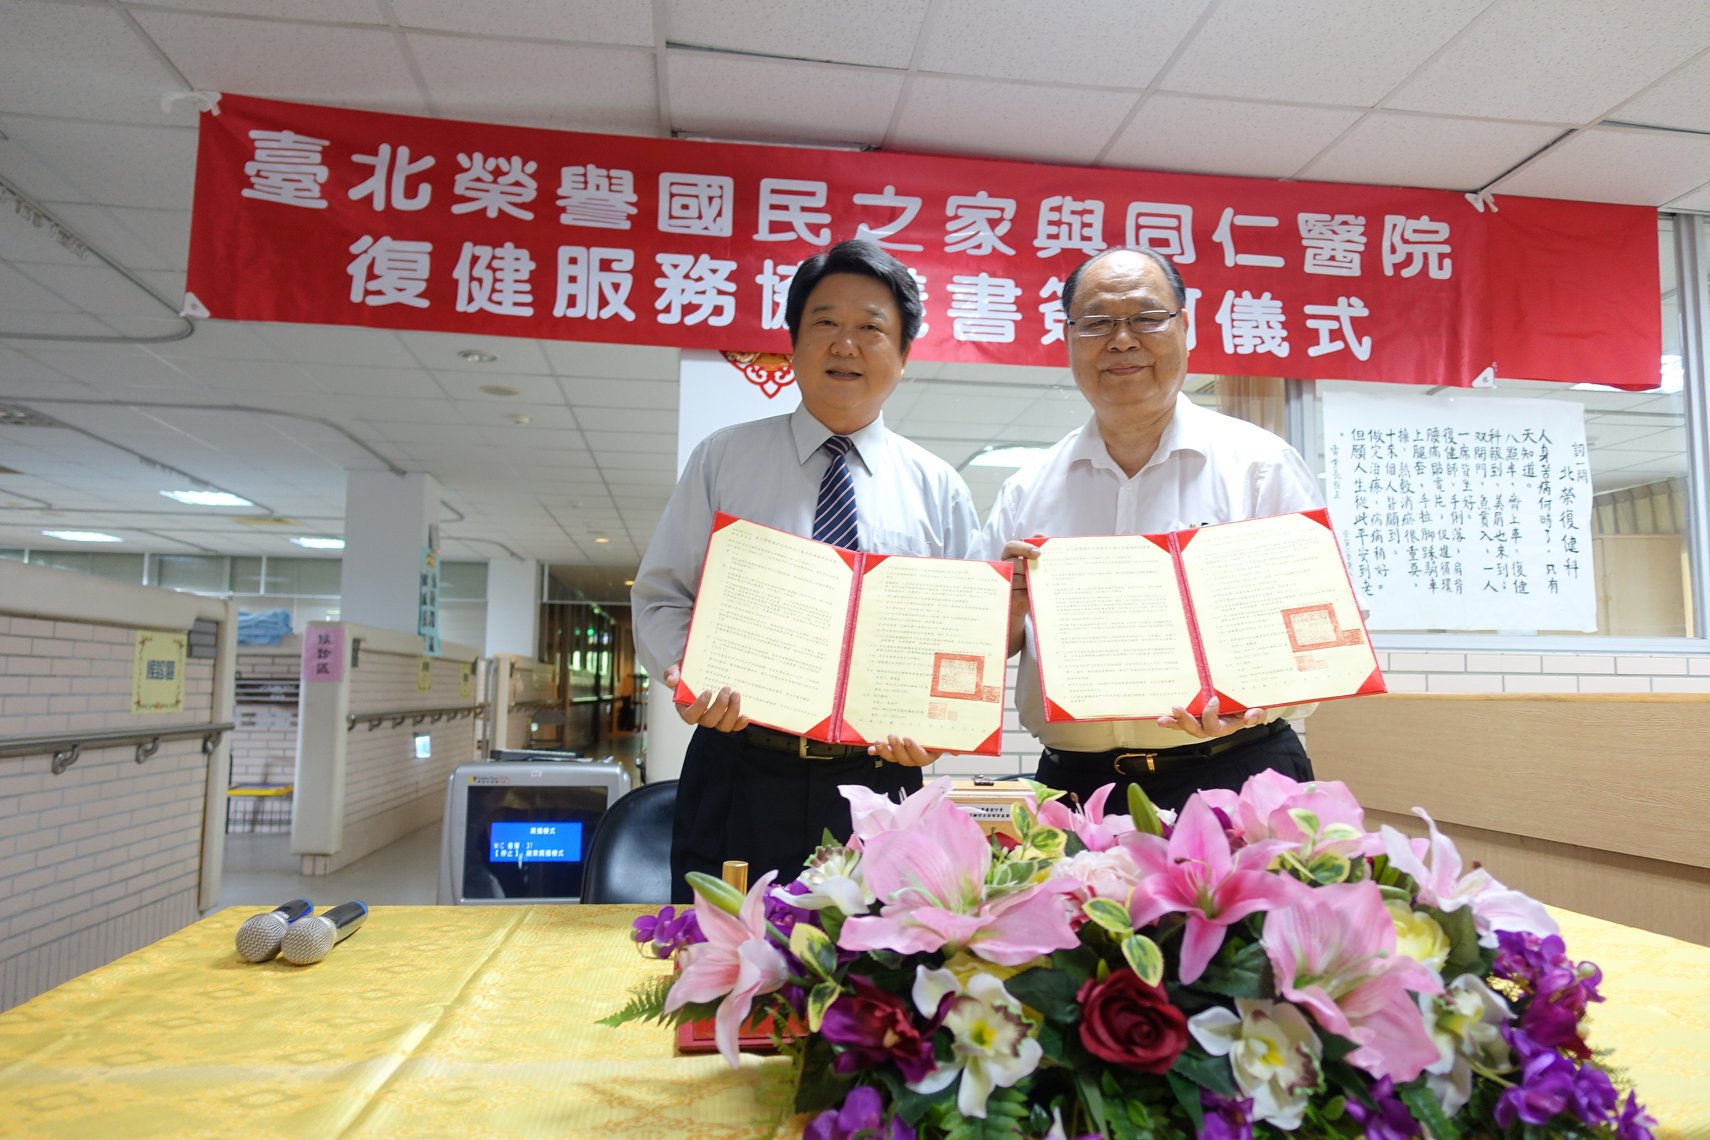 共創新里程碑 嘉惠住民--臺北榮家與同仁醫院續簽定儀式